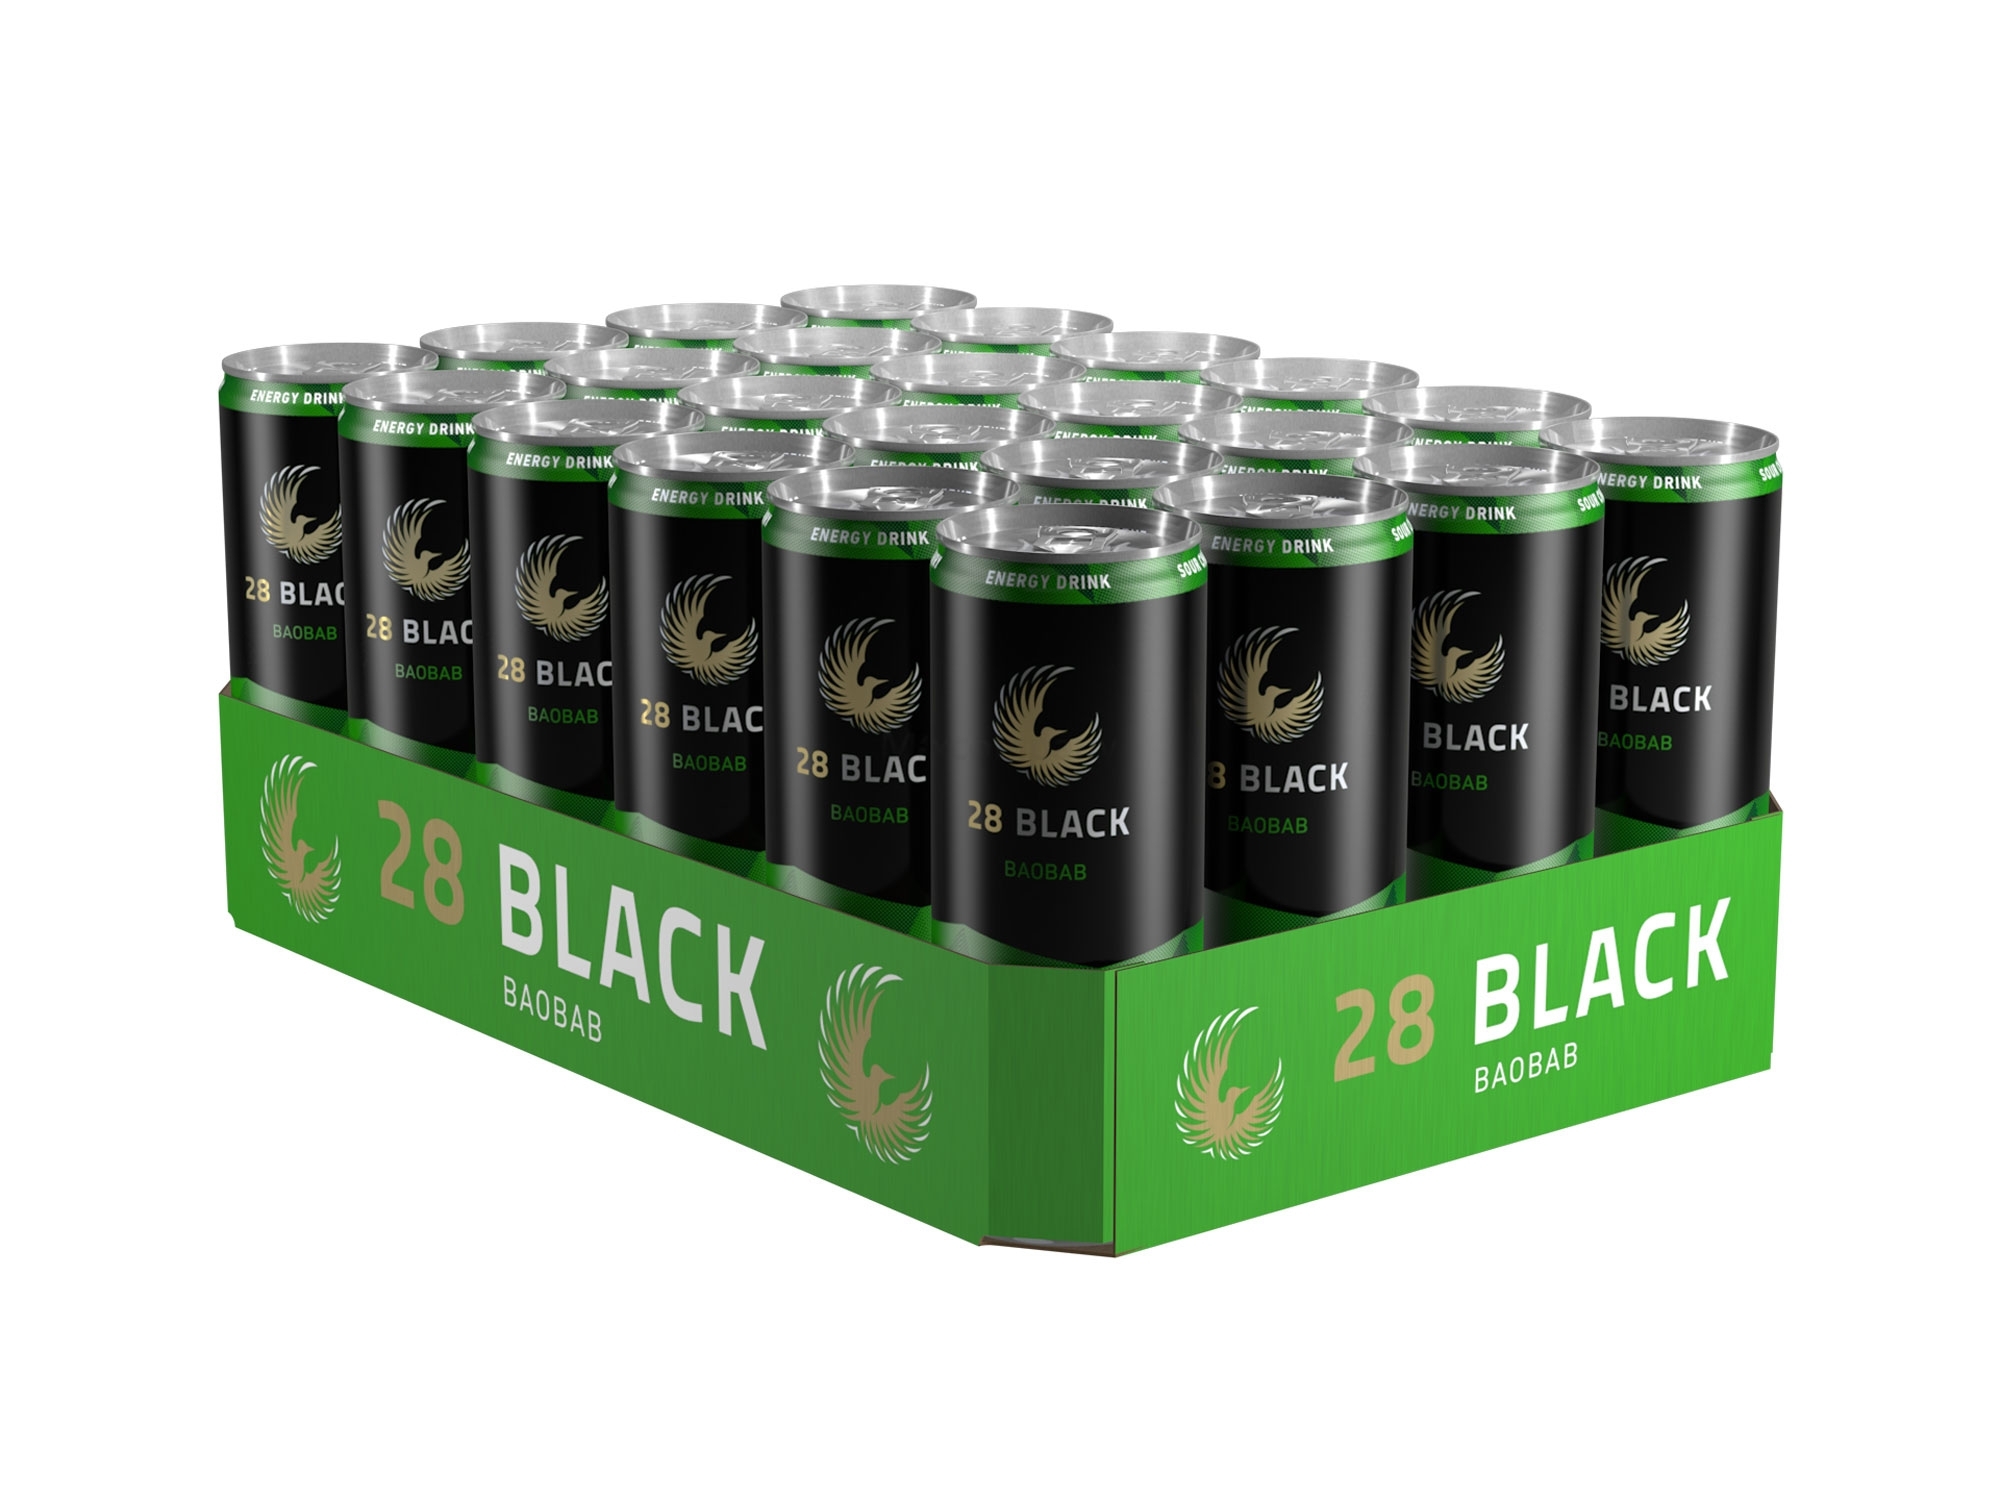 28 Black Baobab Energy Drink inkl. Pfand - 24x 250ml = 6l - EINWEG